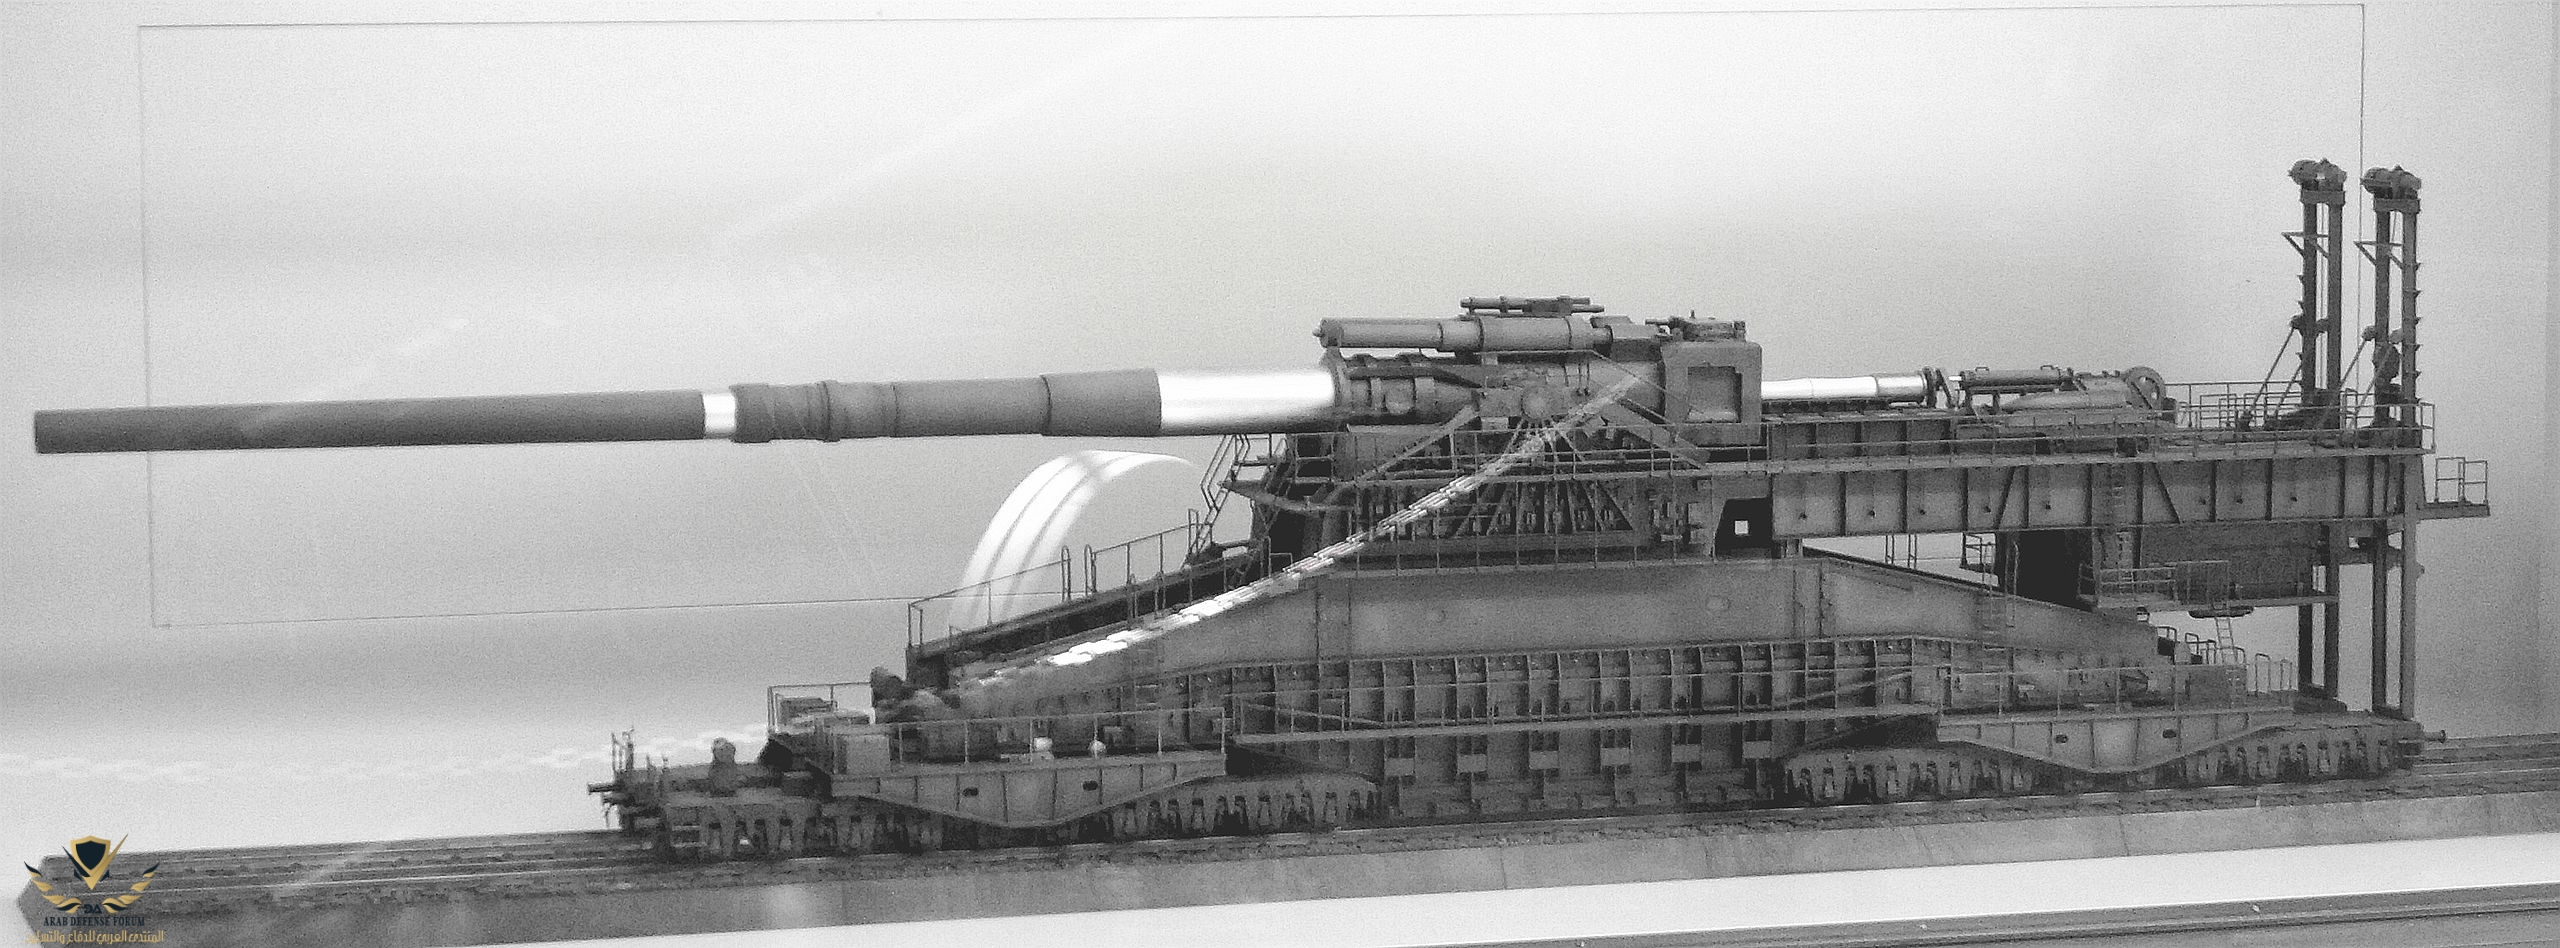 نموذج بندقية سكة حديد شويرر جوستاف الألمانية 1/72 مع 3 متغيرات، مكعبات بناء  لعبة تايم باسر للتجميع : : دمى وألعاب